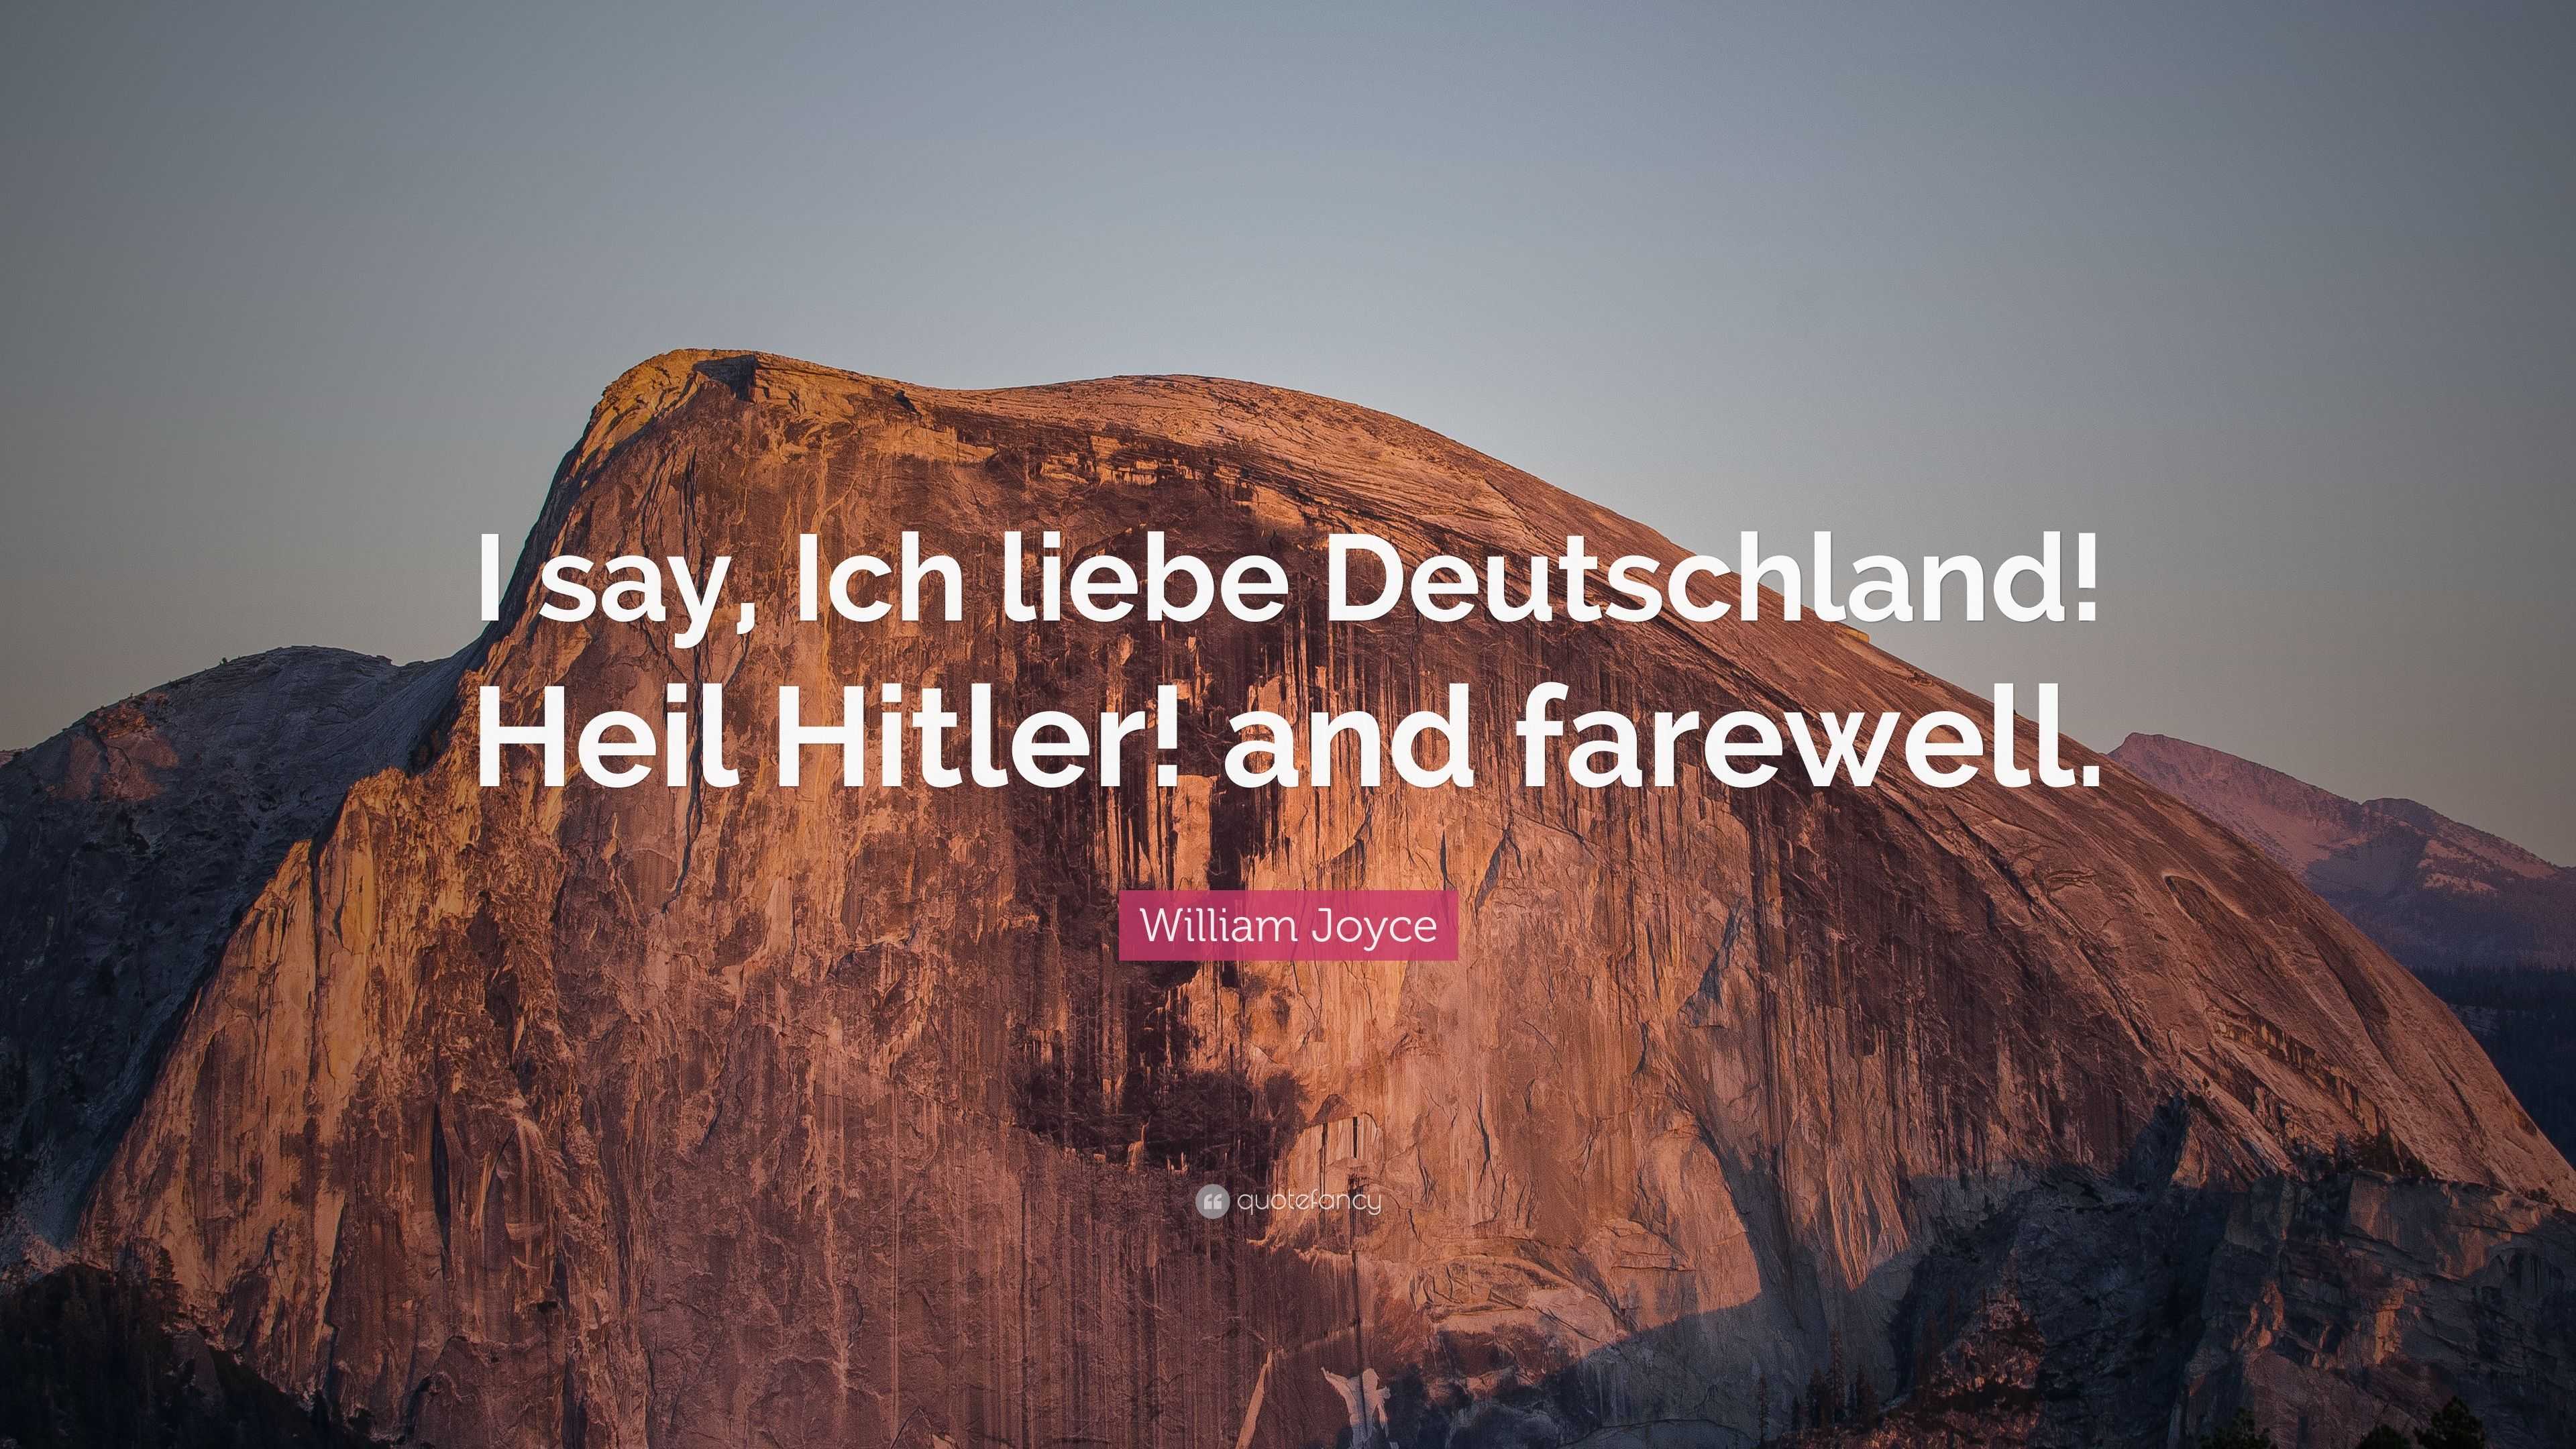 William Joyce Quote: “I say, Ich liebe Deutschland! Heil Hitler! and